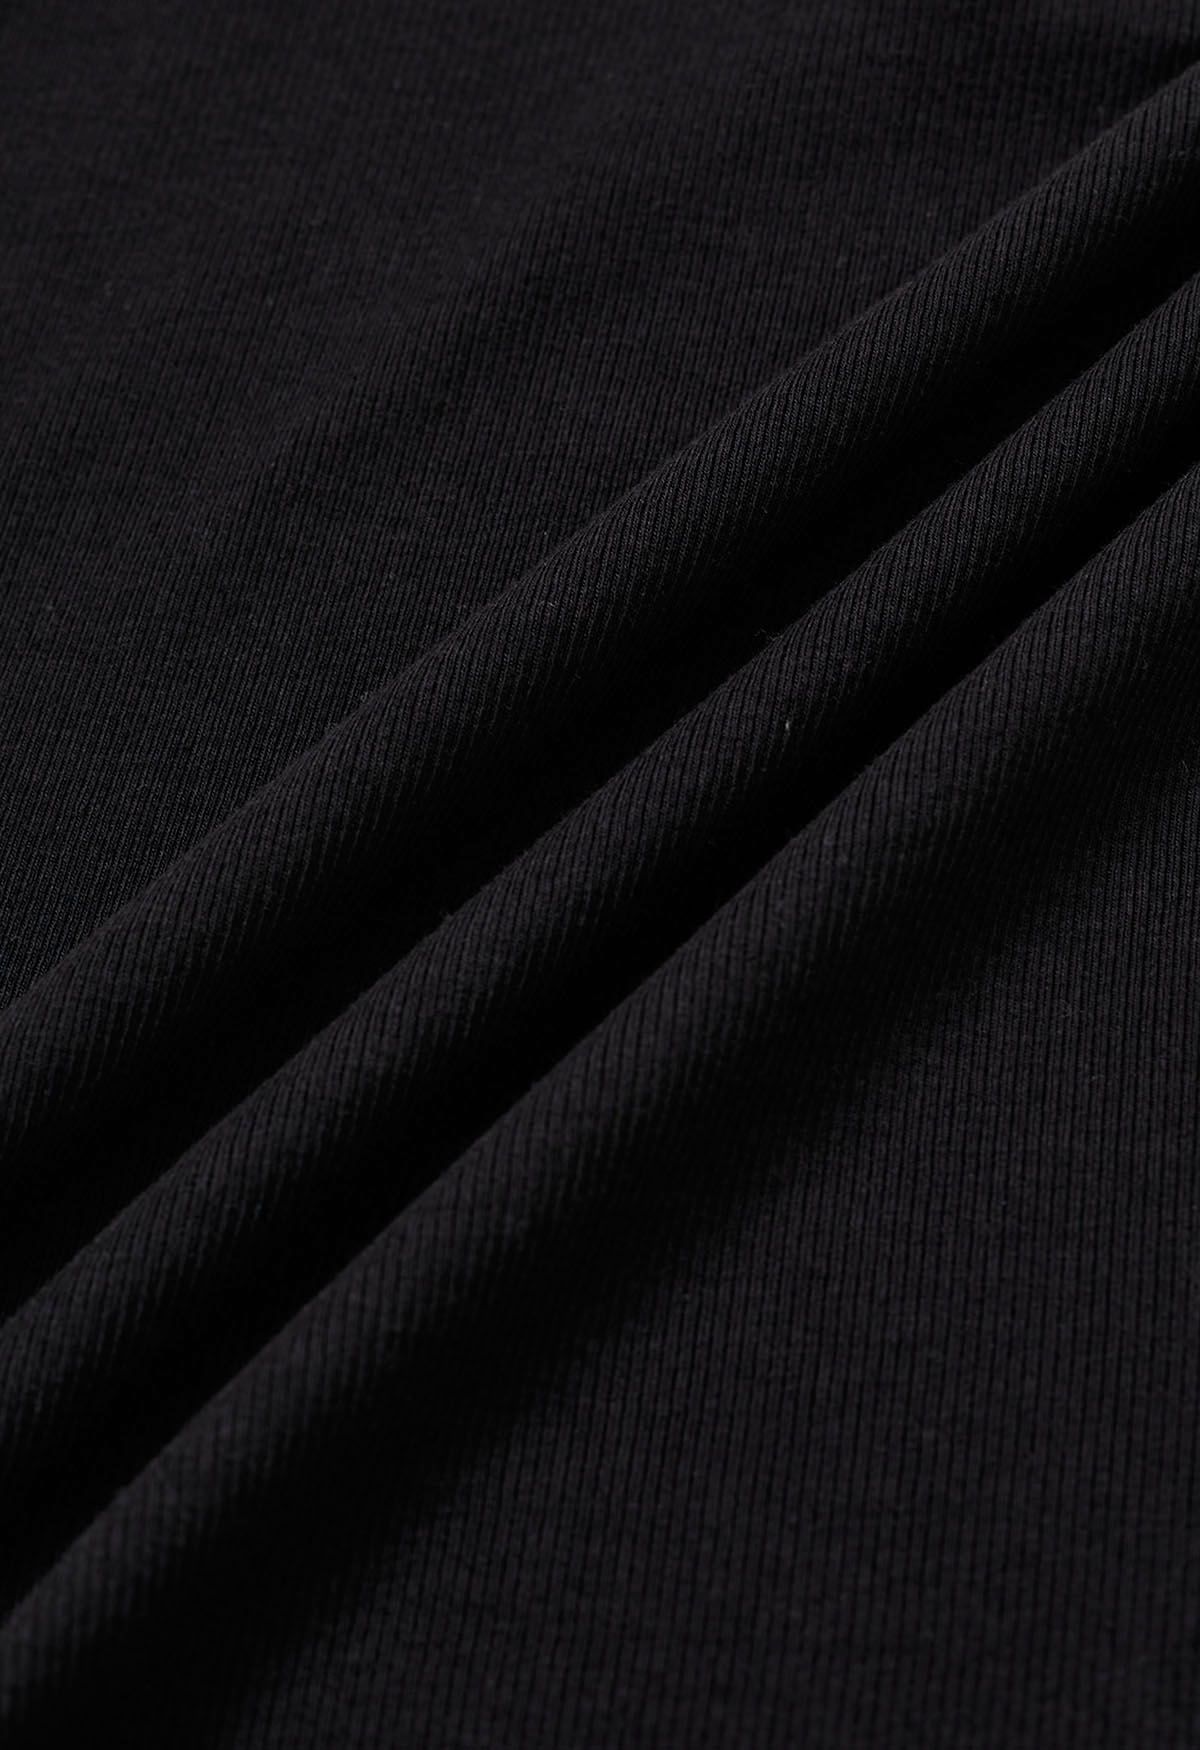 Simplicity – Camisole-Oberteil mit Knopfleiste vorn in Schwarz